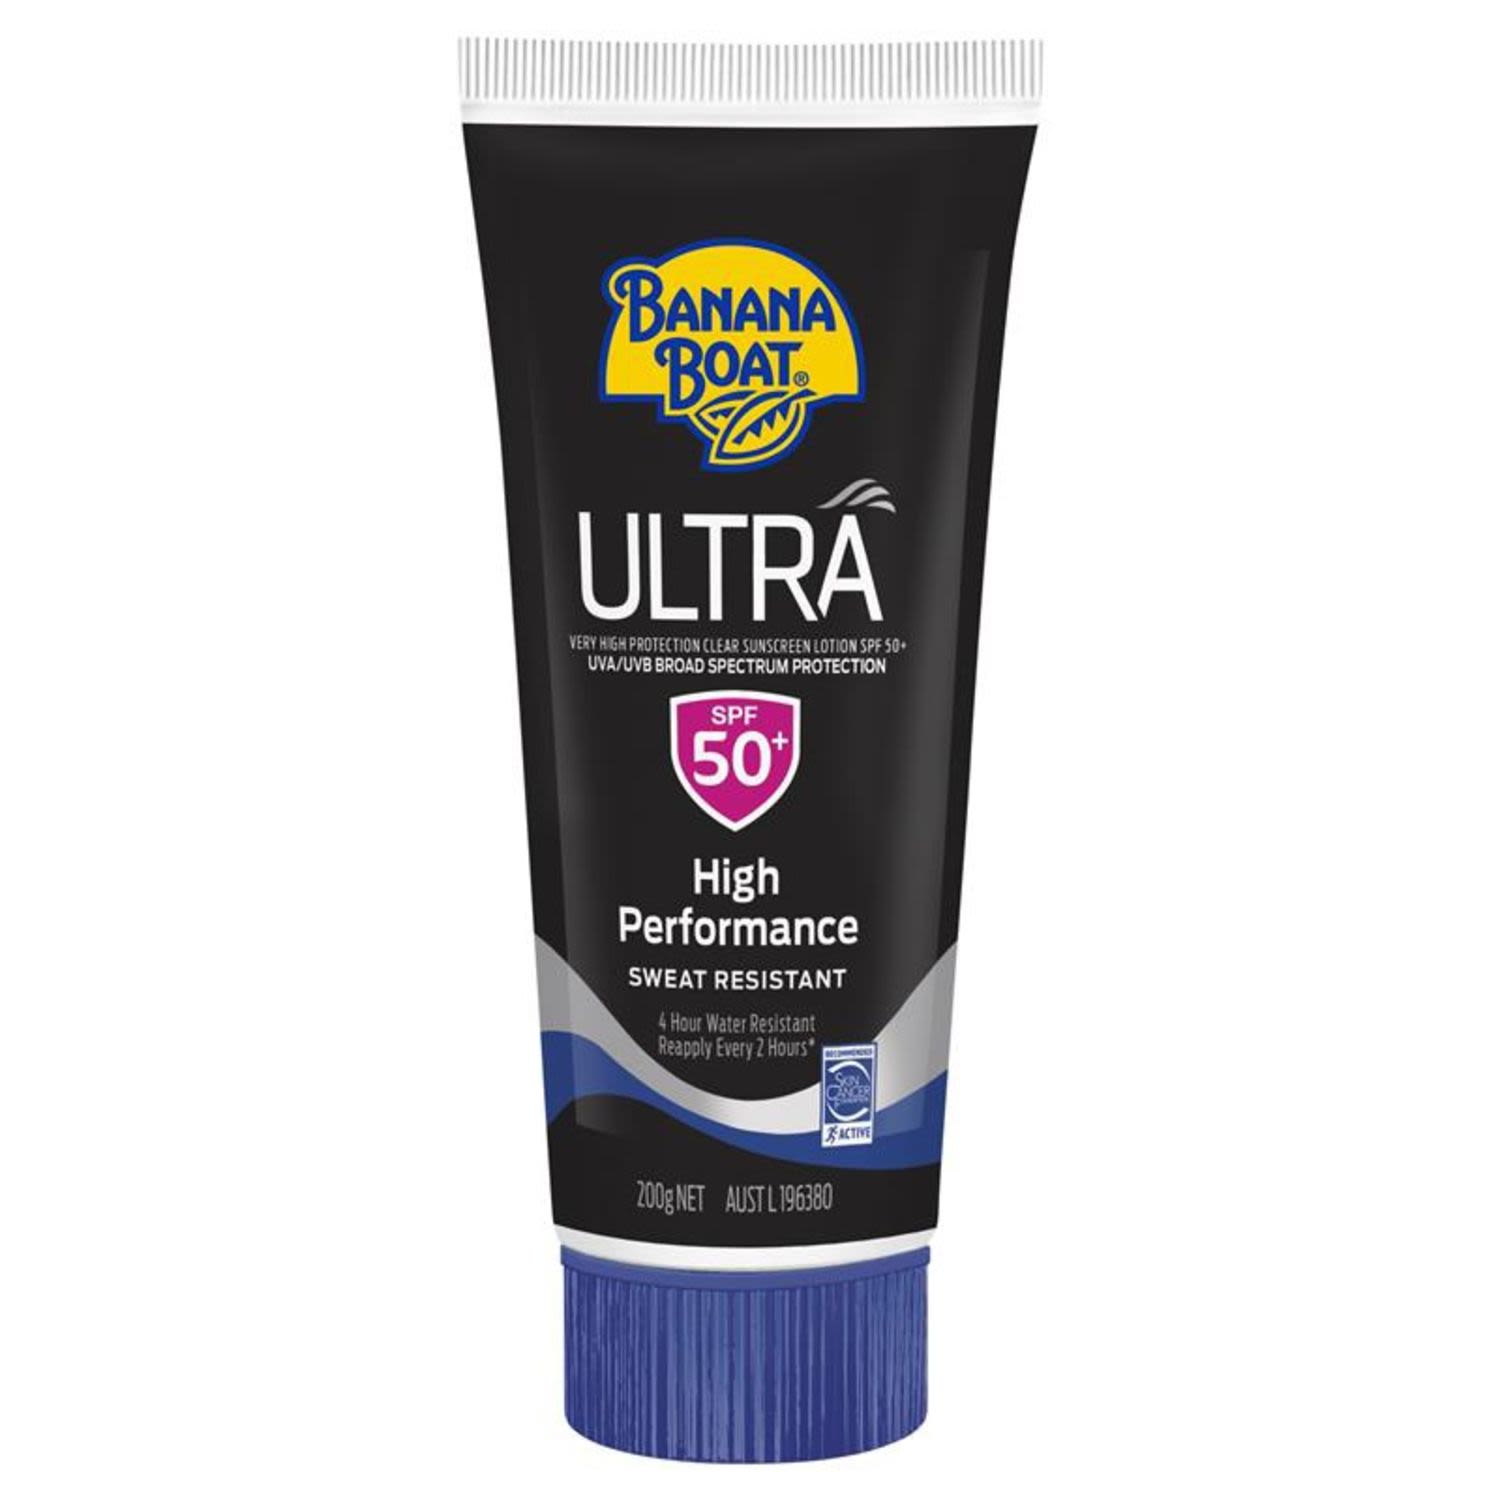 Banana Boat Ultra SPF 50 Sunscreen, 200 Gram